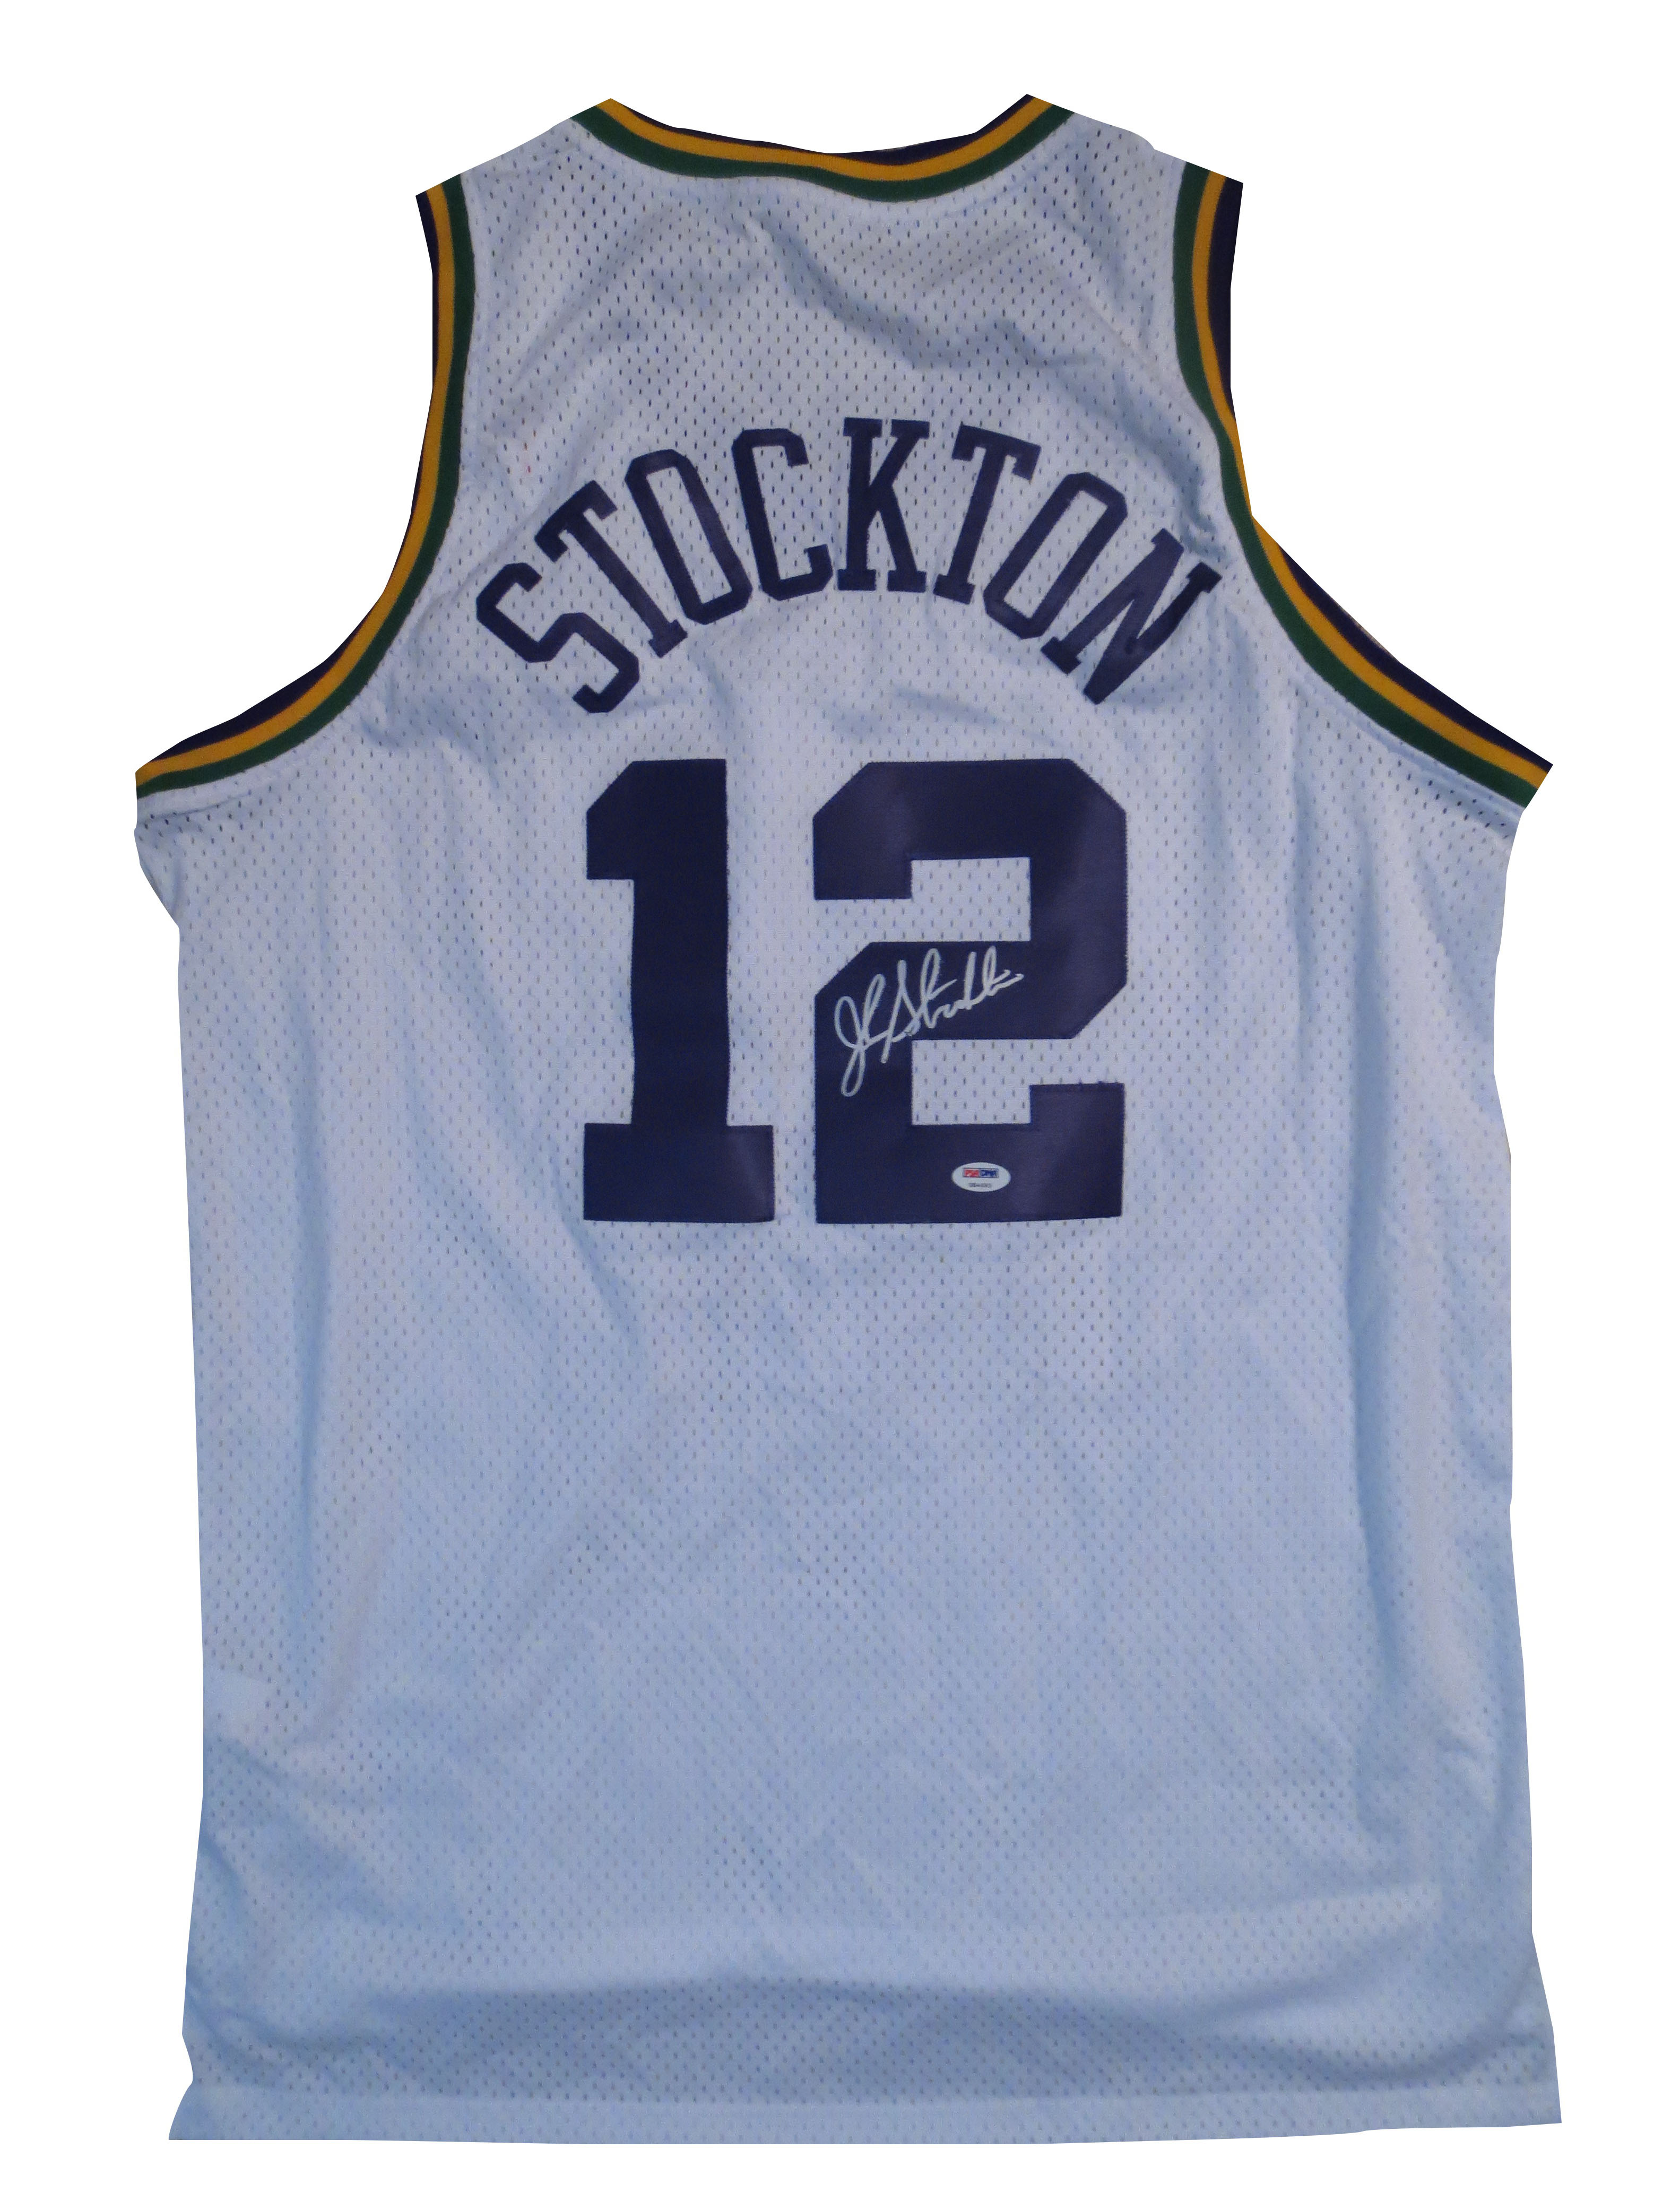 John Stockton Signed Jazz Jersey from 